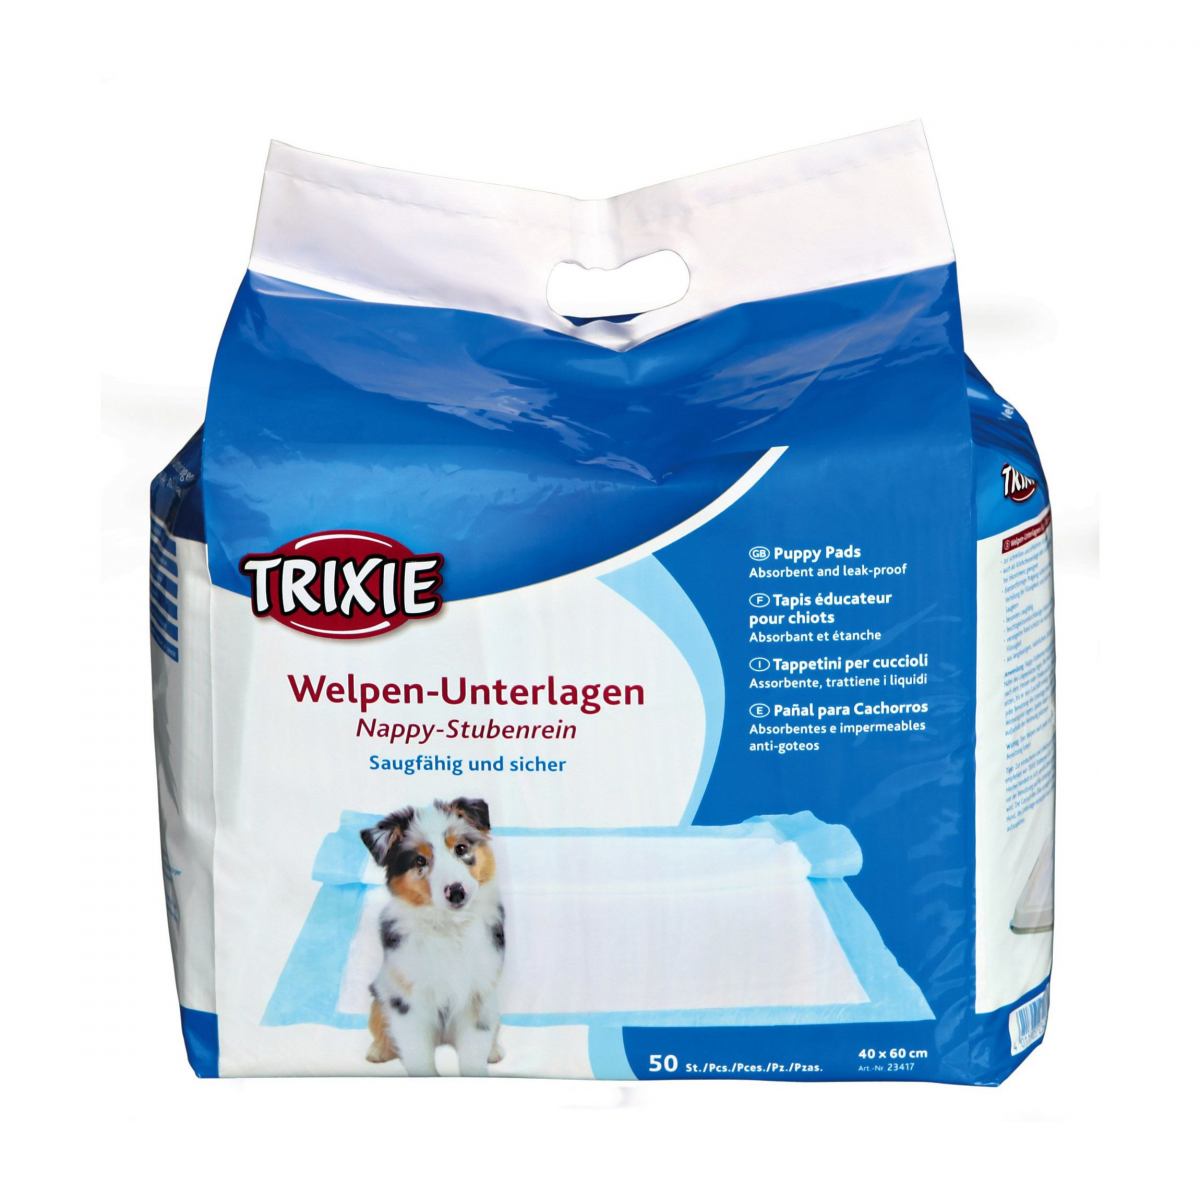 Пелёнки для собак Trixie 40x60 см, 50 шт из целлюлозы